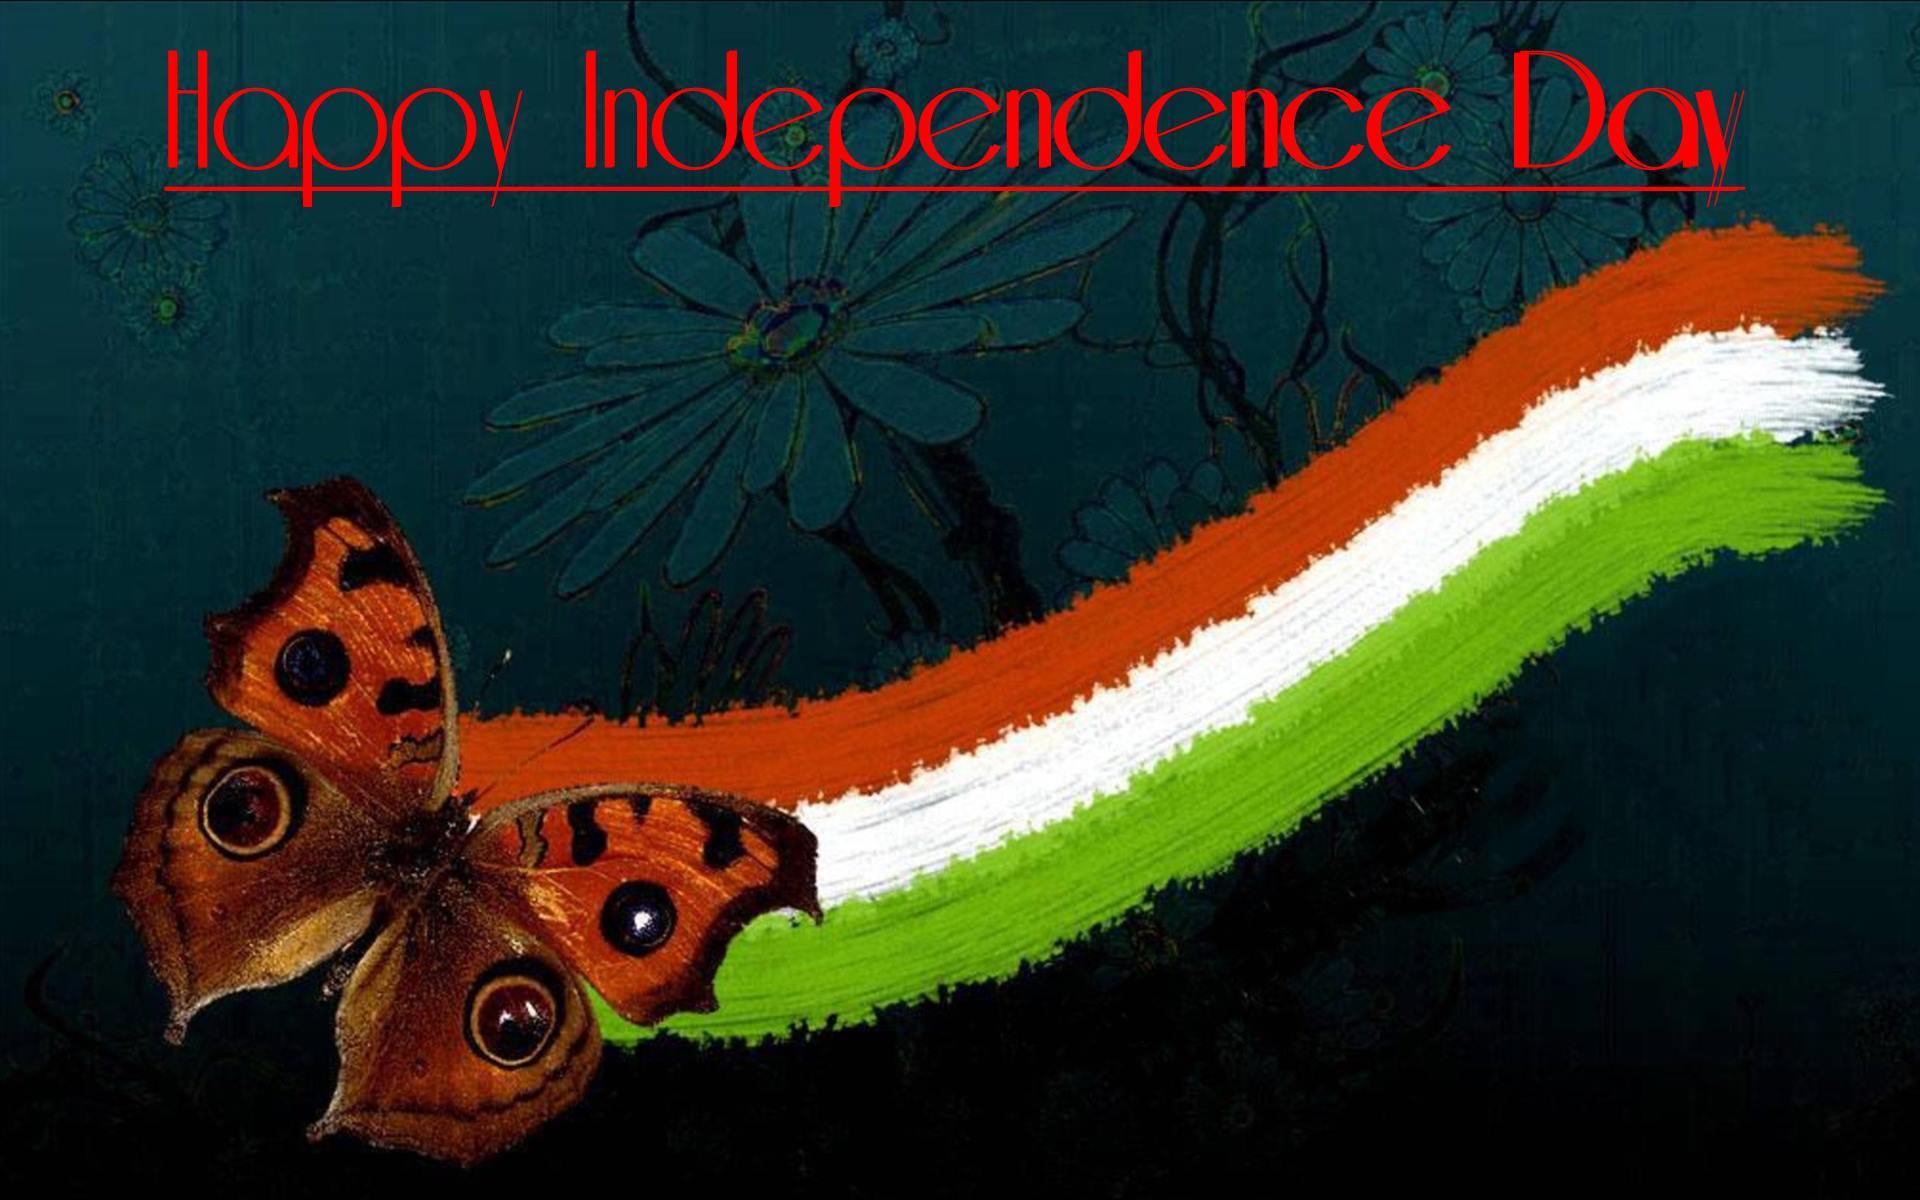 carta da parati bandiera indiana,la farfalla,insetto,falene e farfalle,falena,invertebrato